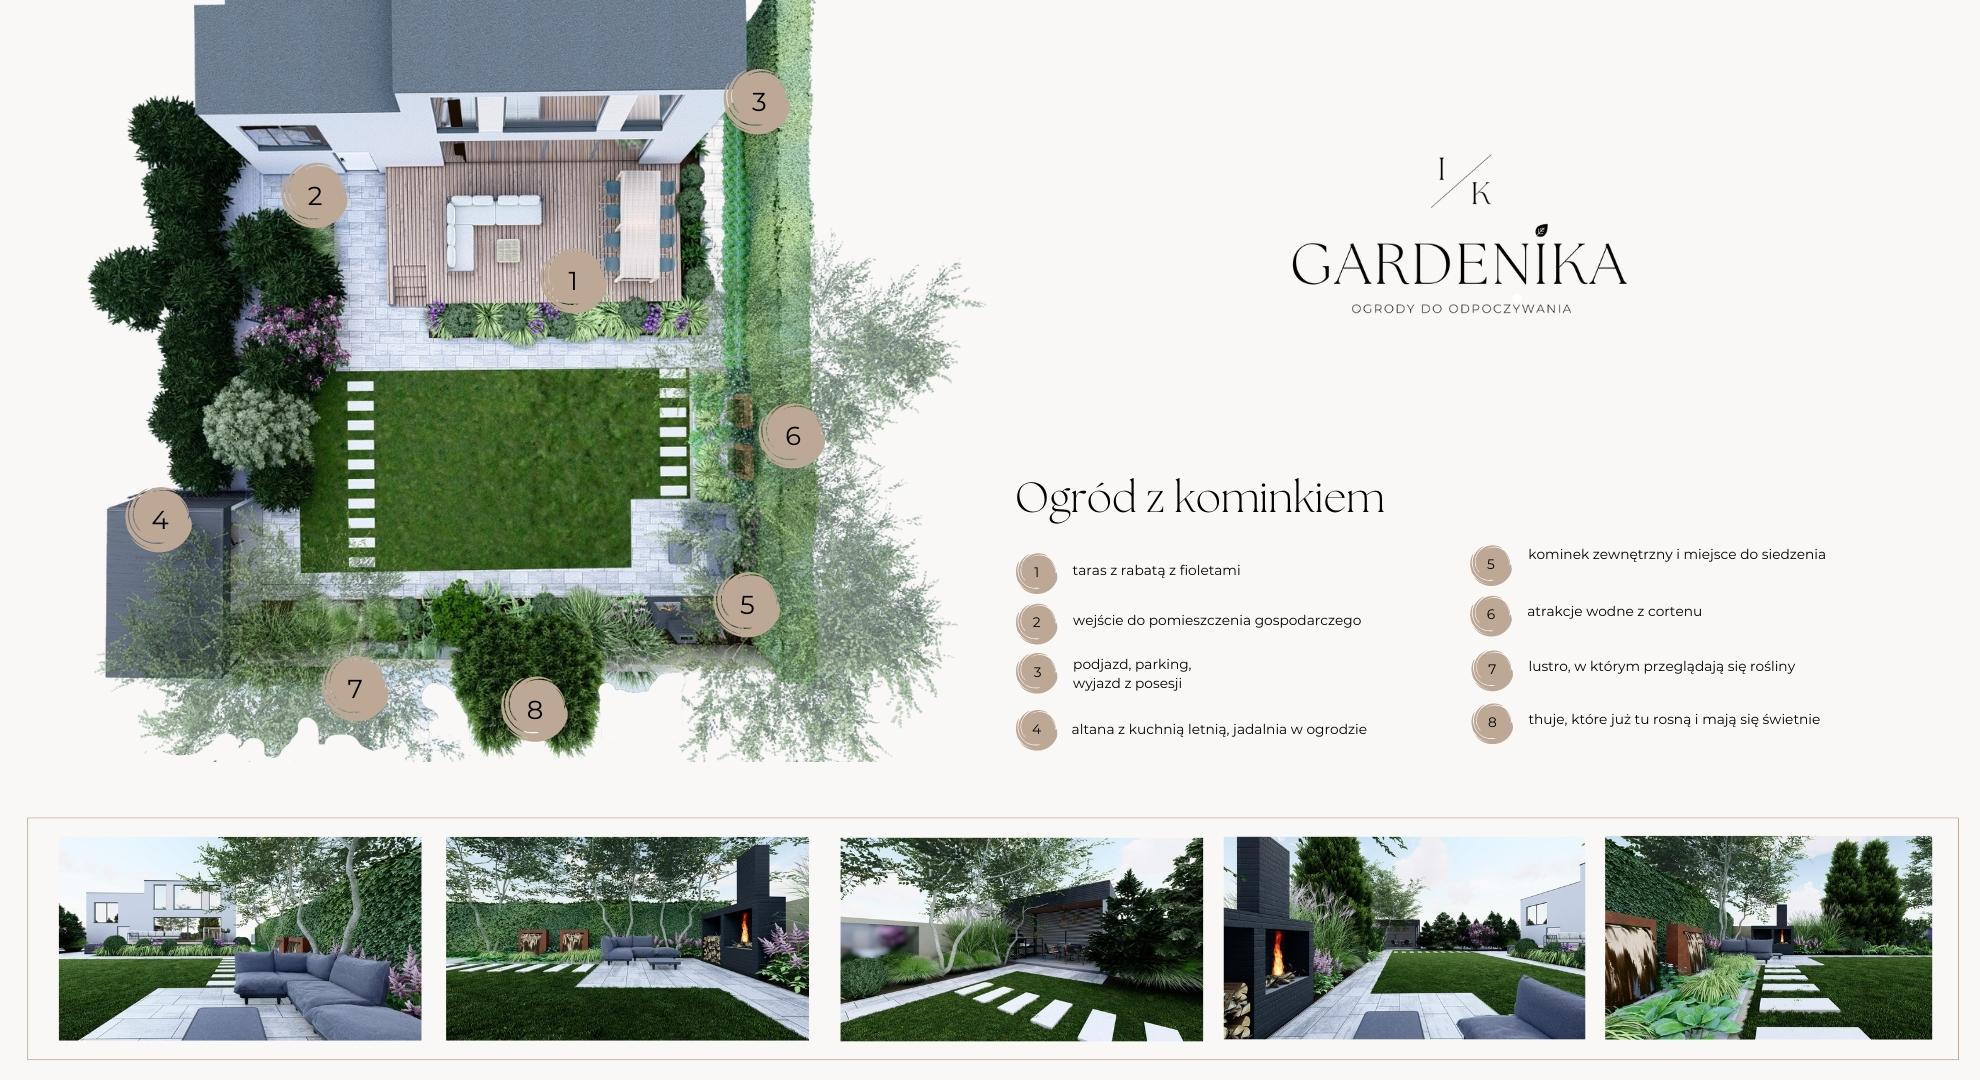 gardenika projektowanie ogrodow (11)